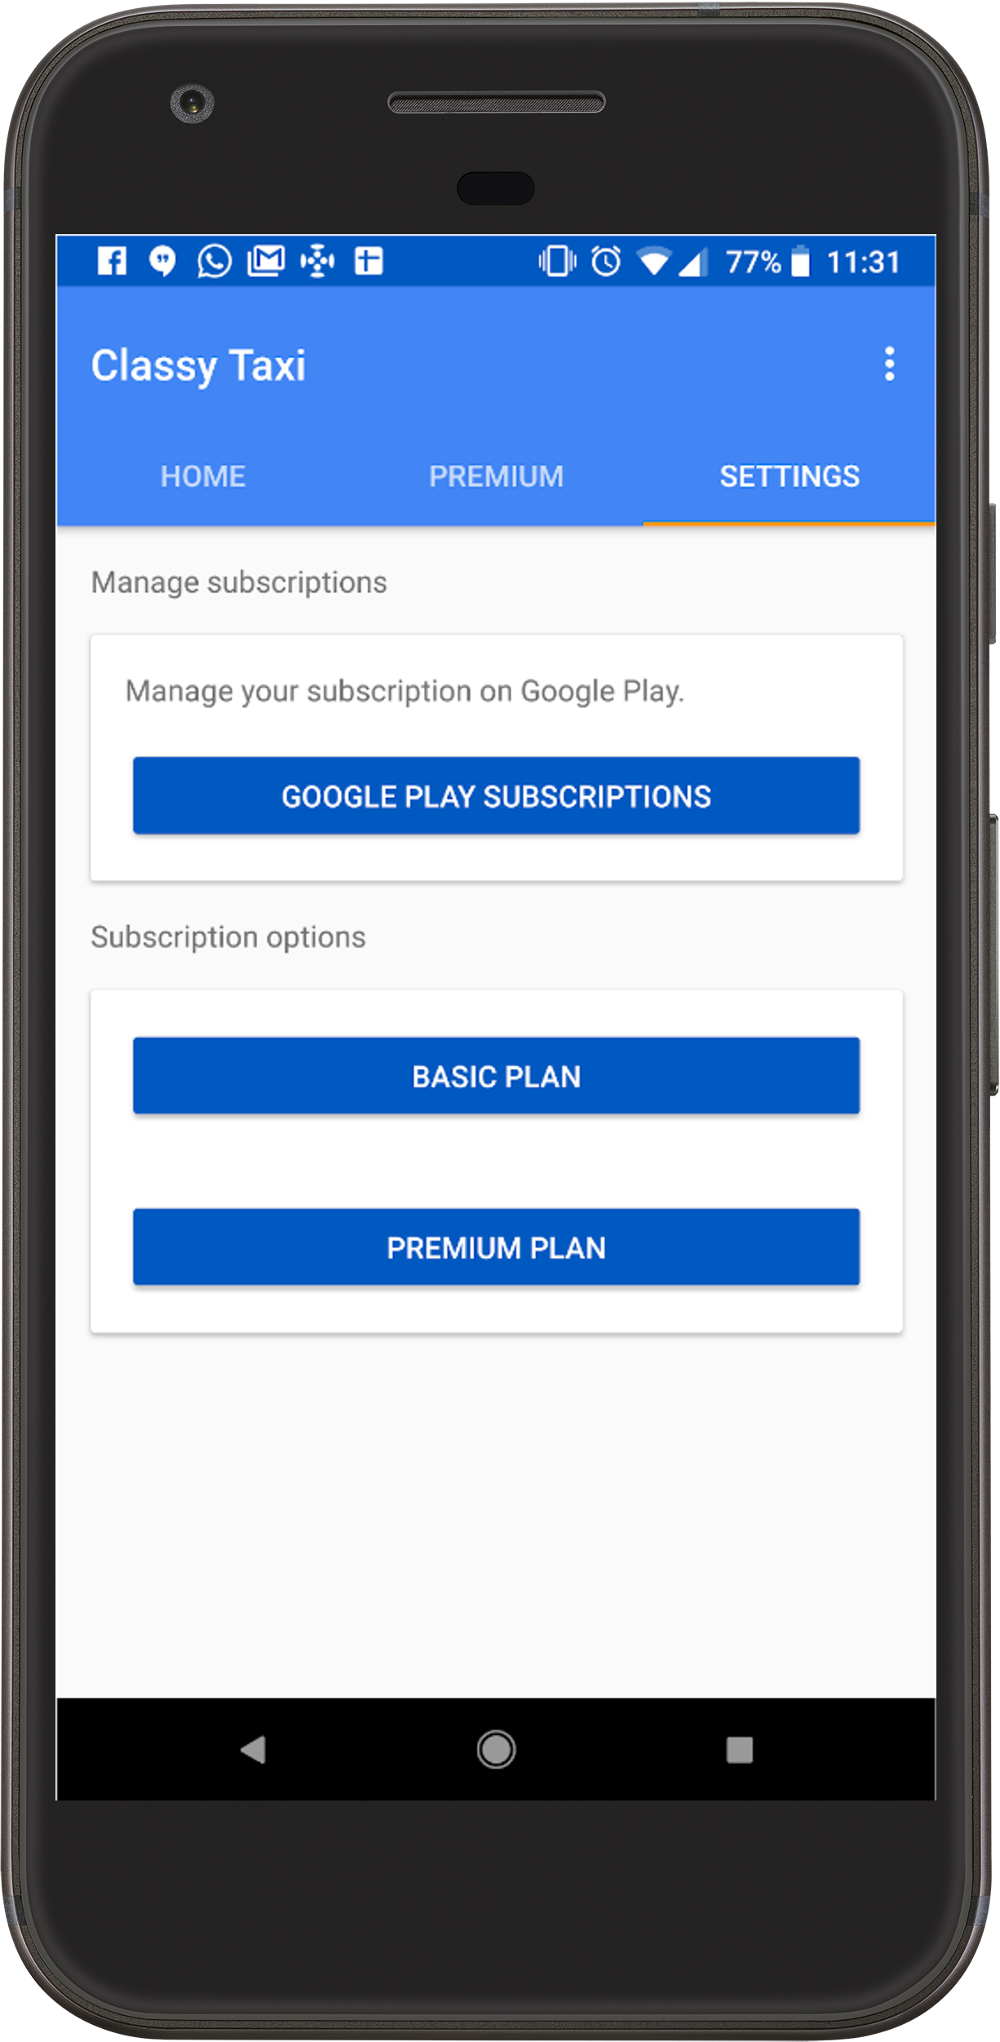 Le bouton "Google Play Subscriptions" (Abonnements Google Play) illustré sur cette image est un exemple de lien permettant de gérer les abonnements.